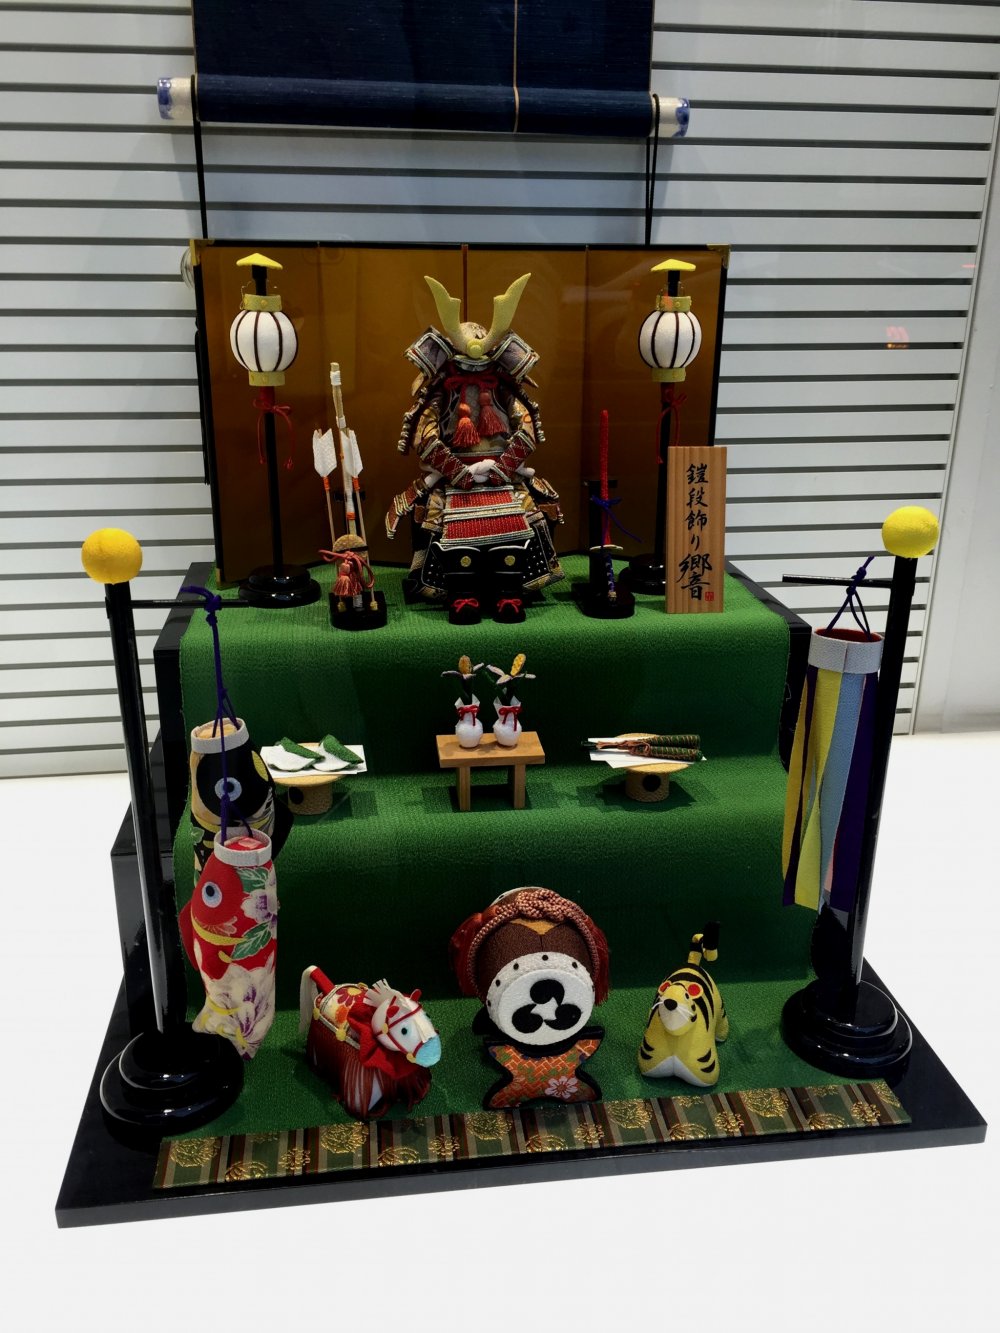 Композиция в витрине канцелярских товаров Tokyo Kyukyodo ко дню детей, который традиционно отмечается пятого мая